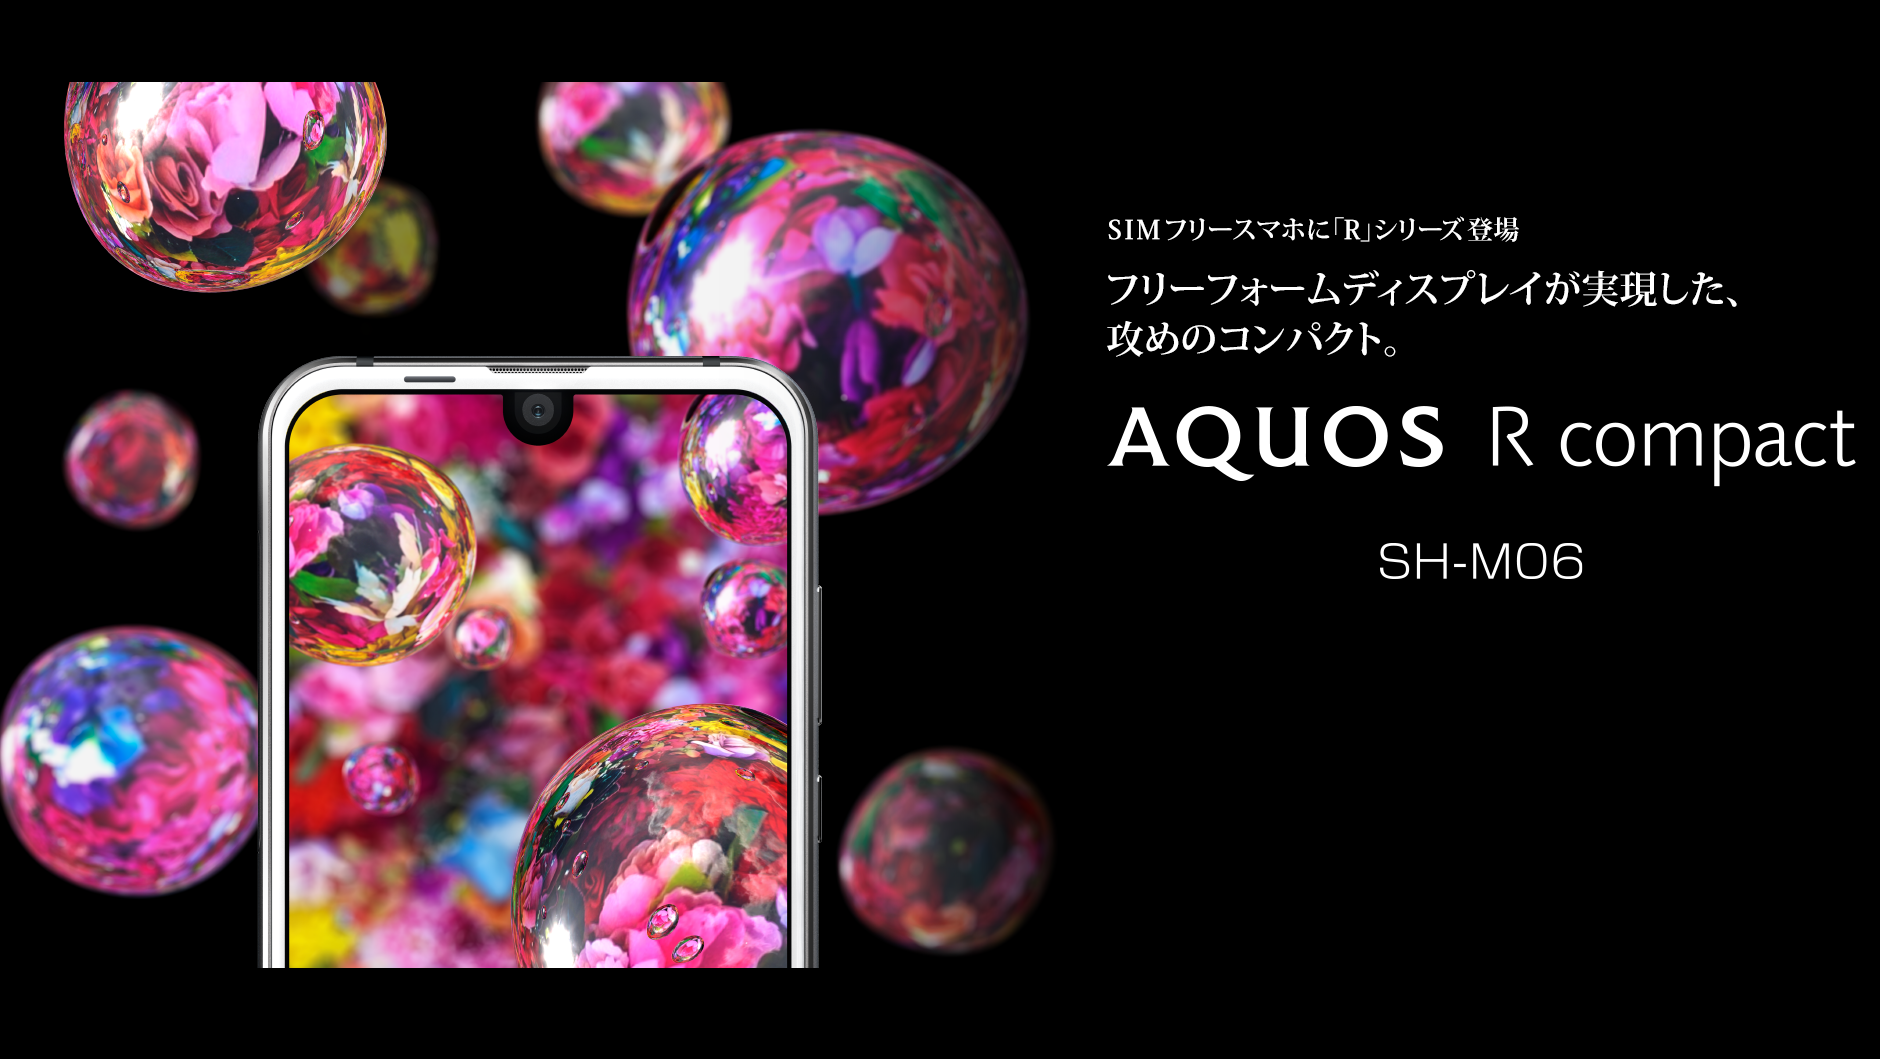 AQUOS R compact SH-M06 評判・レビュー | SimChoice